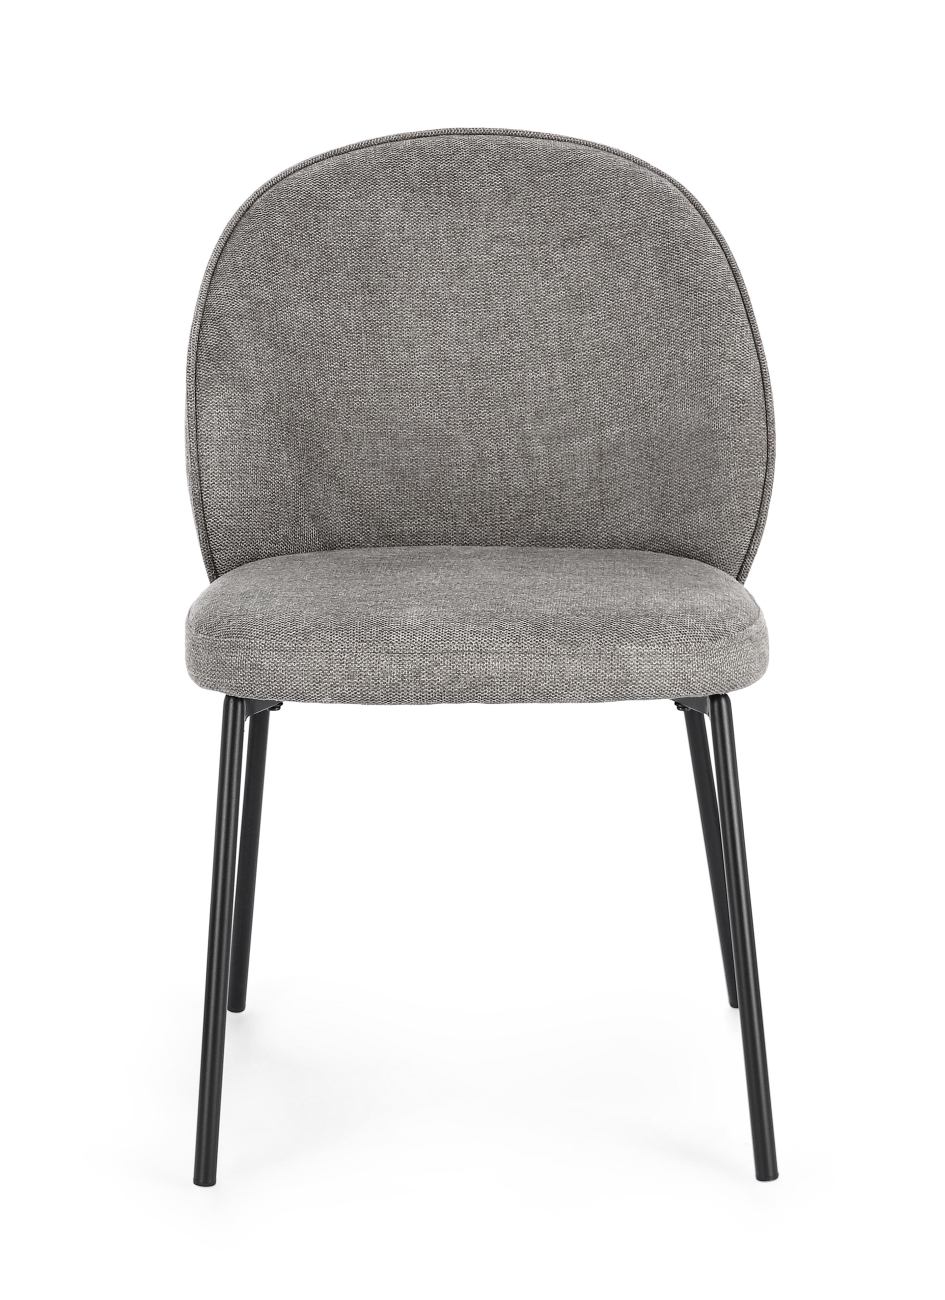 Der Esszimmerstuhl Wendy überzeugt mit seinem modernen Stil. Gefertigt wurde er aus Stoff, welcher einen grauen Farbton besitzt. Das Gestell ist aus Metall und hat eine schwarze Farbe. Der Stuhl besitzt eine Sitzhöhe von 48 cm.